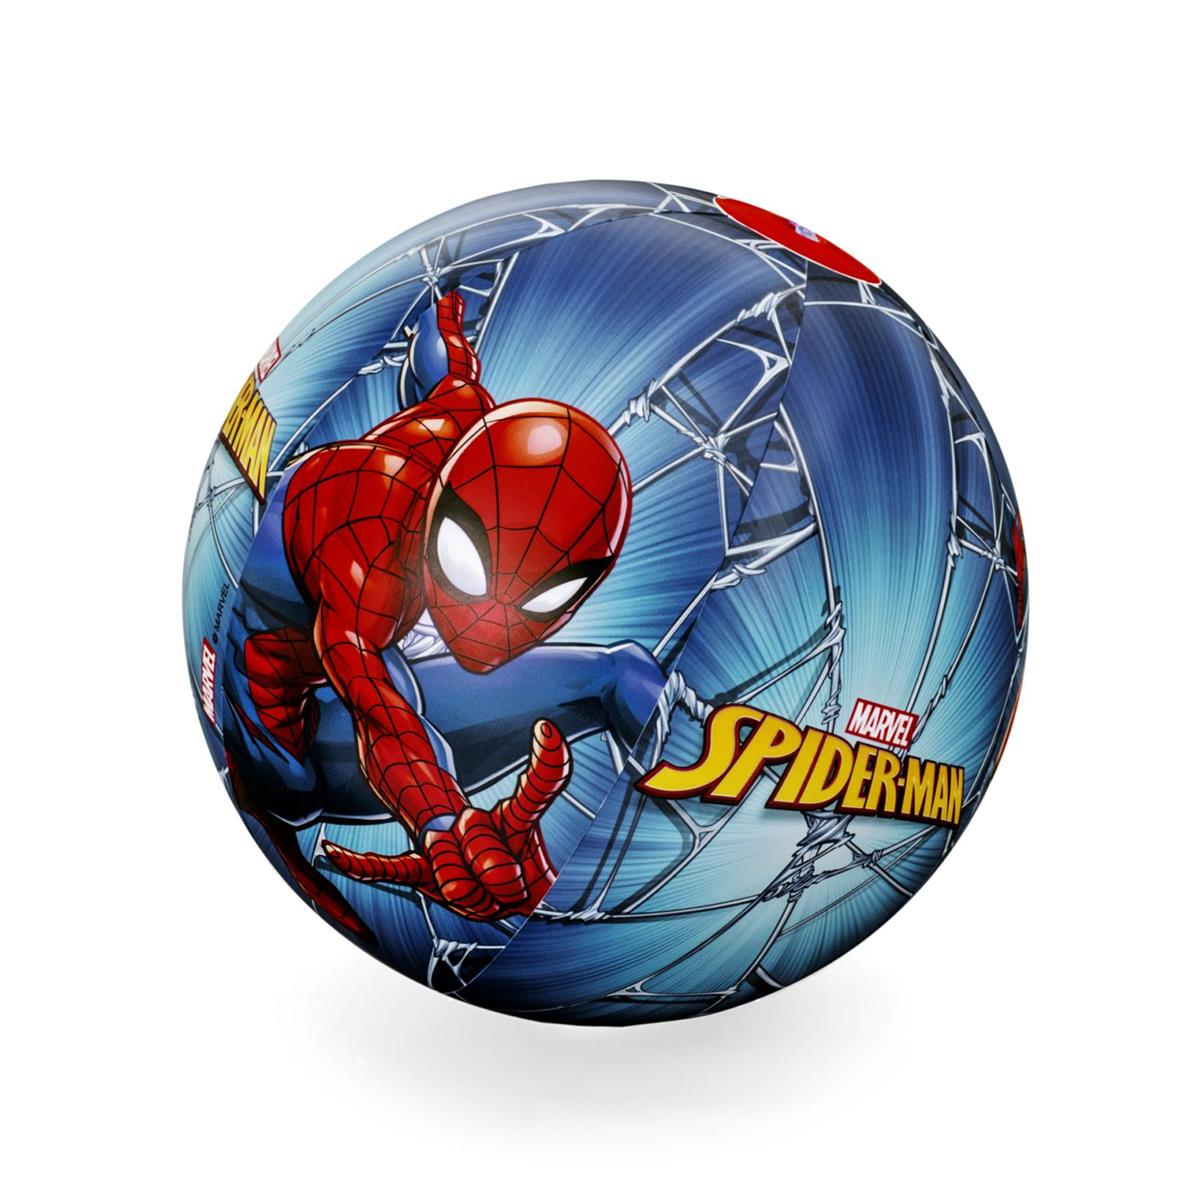 Pallone mare marvel spider-man cm. 51 - Bestway, Avengers, Spiderman